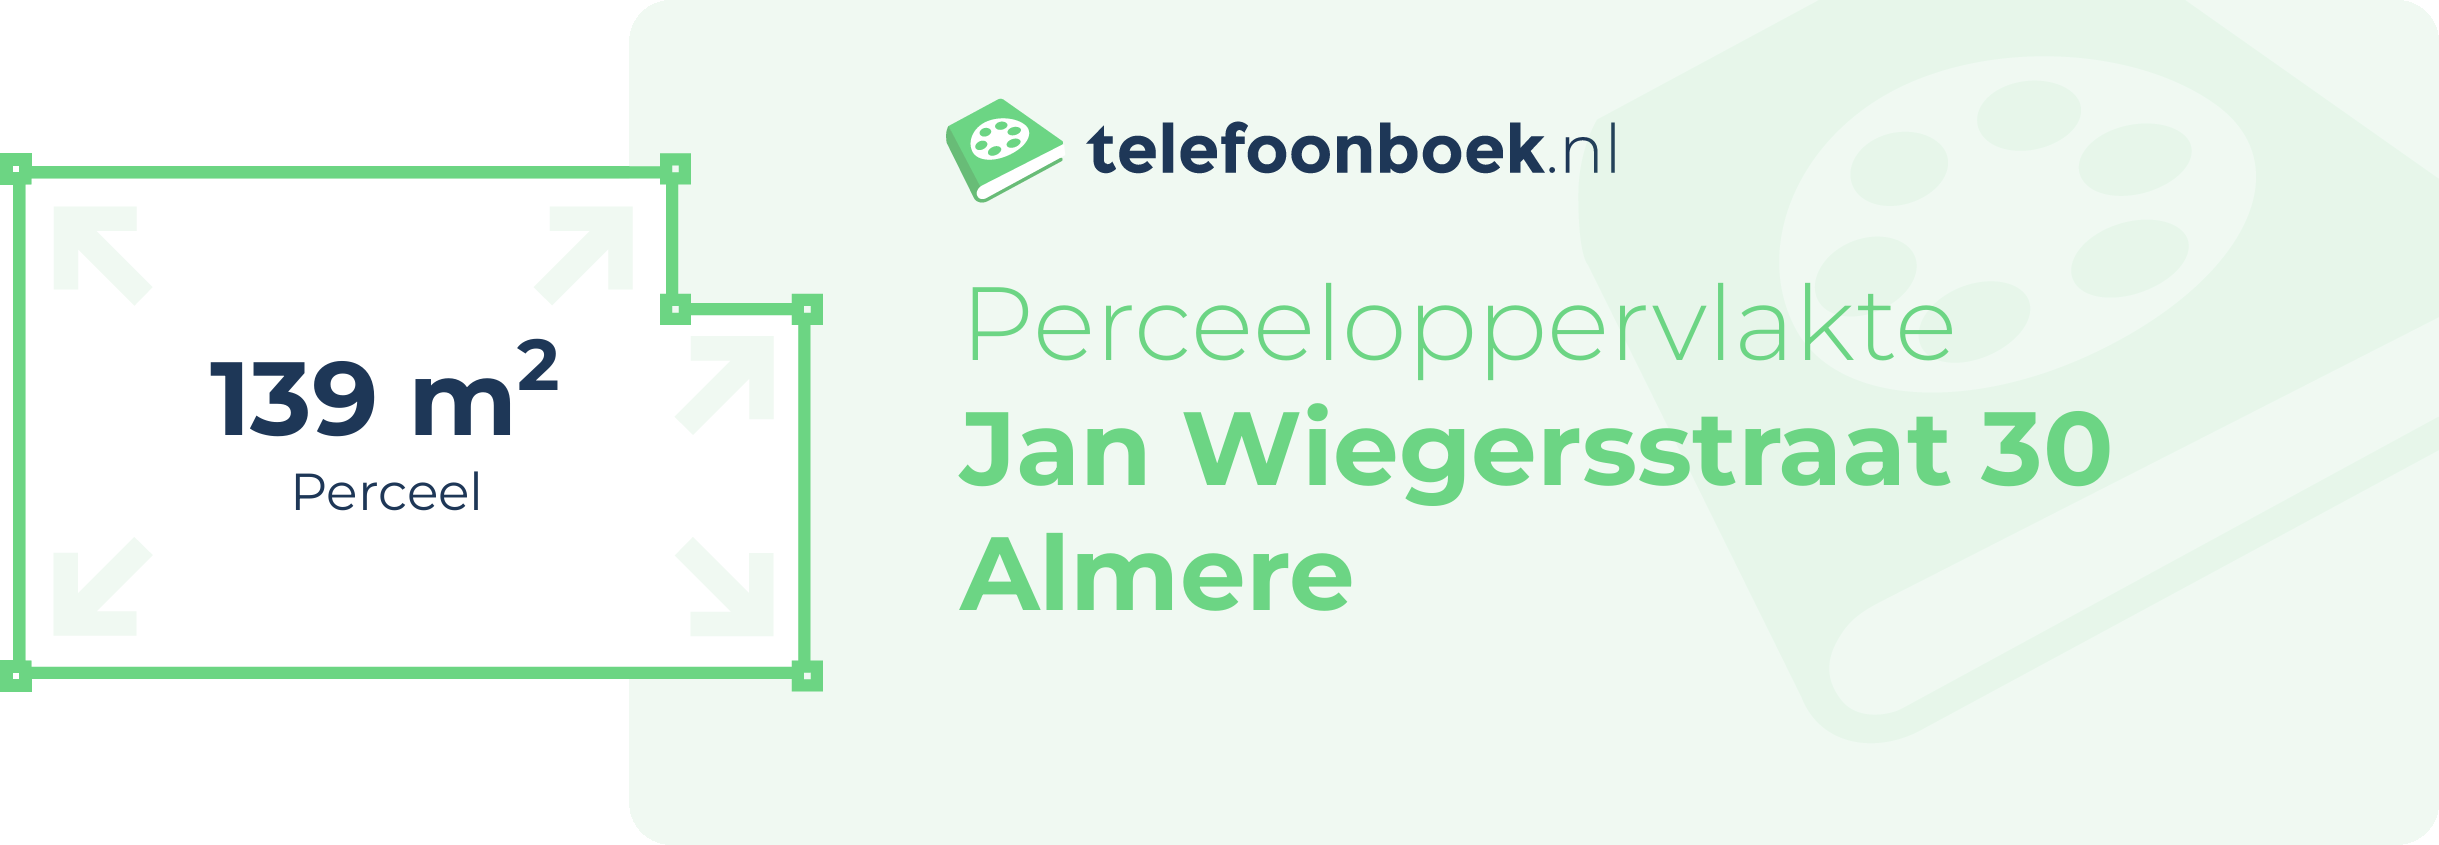 Perceeloppervlakte Jan Wiegersstraat 30 Almere